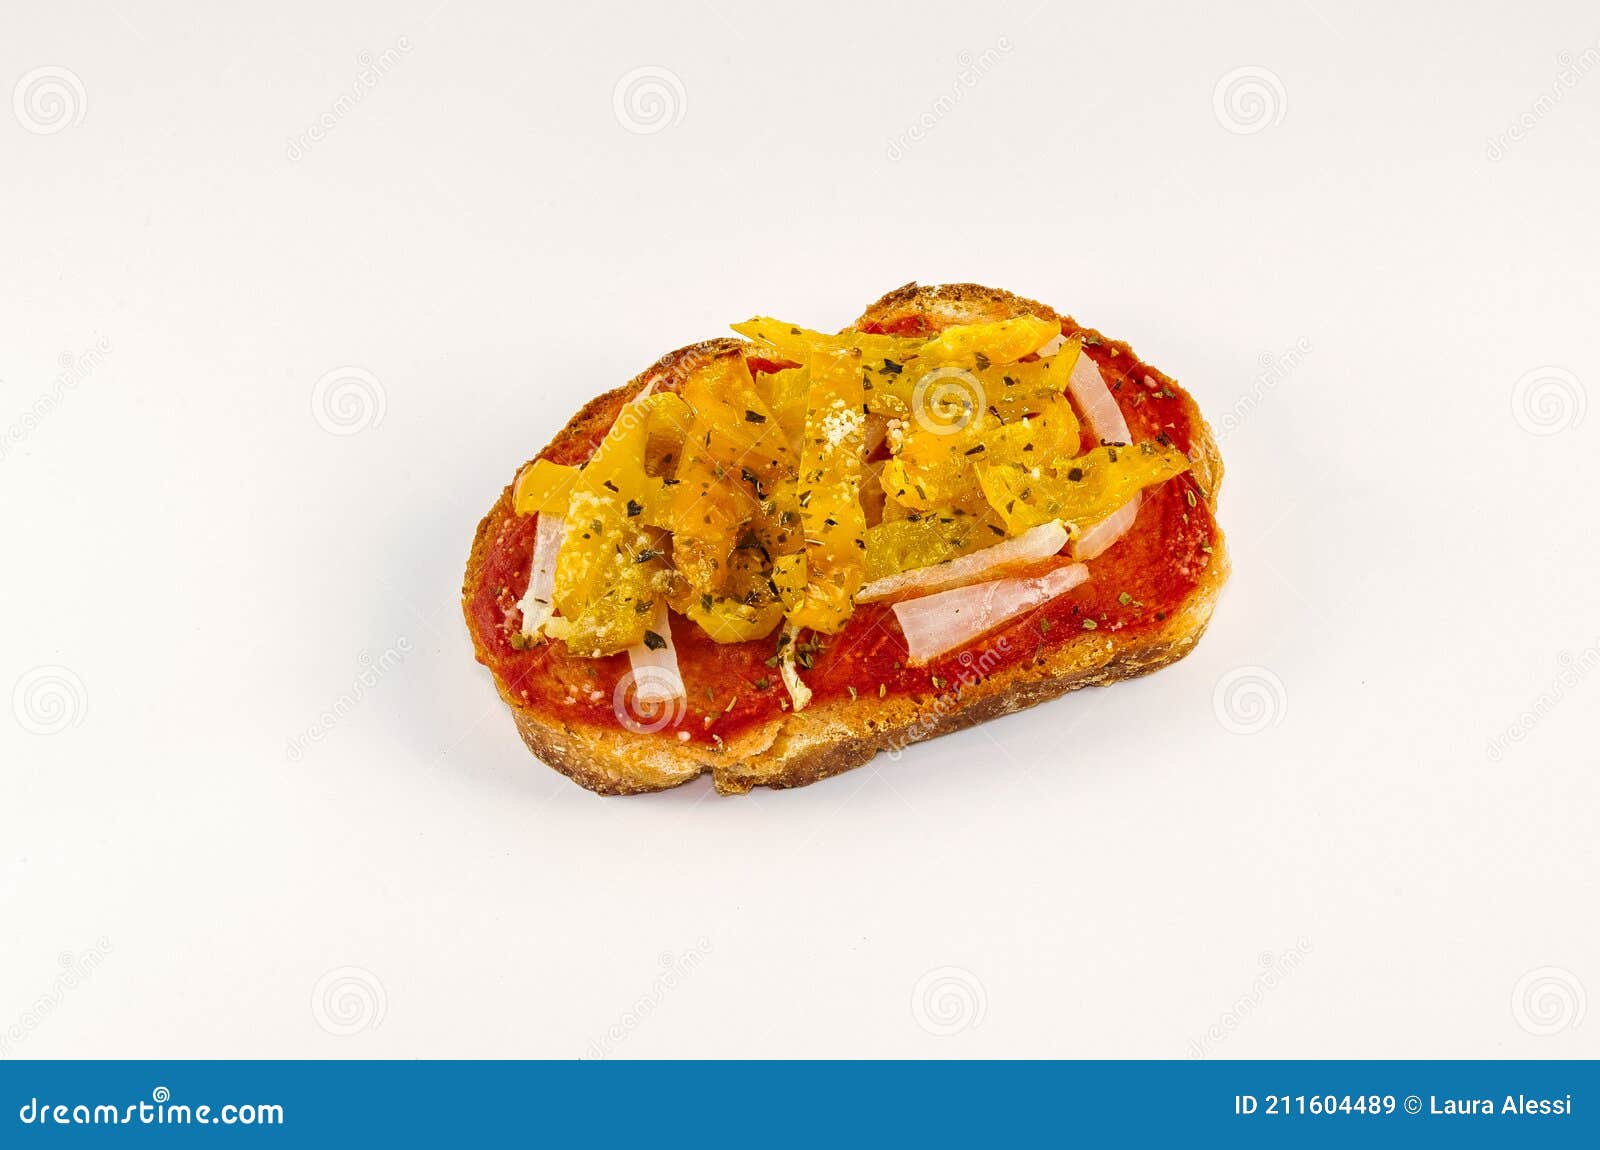 antipasto vegano:bruschetta con pane,pomodoro,peperone e cipolla. vegan appetizer made of a slice of bread,tomato pepper and onion